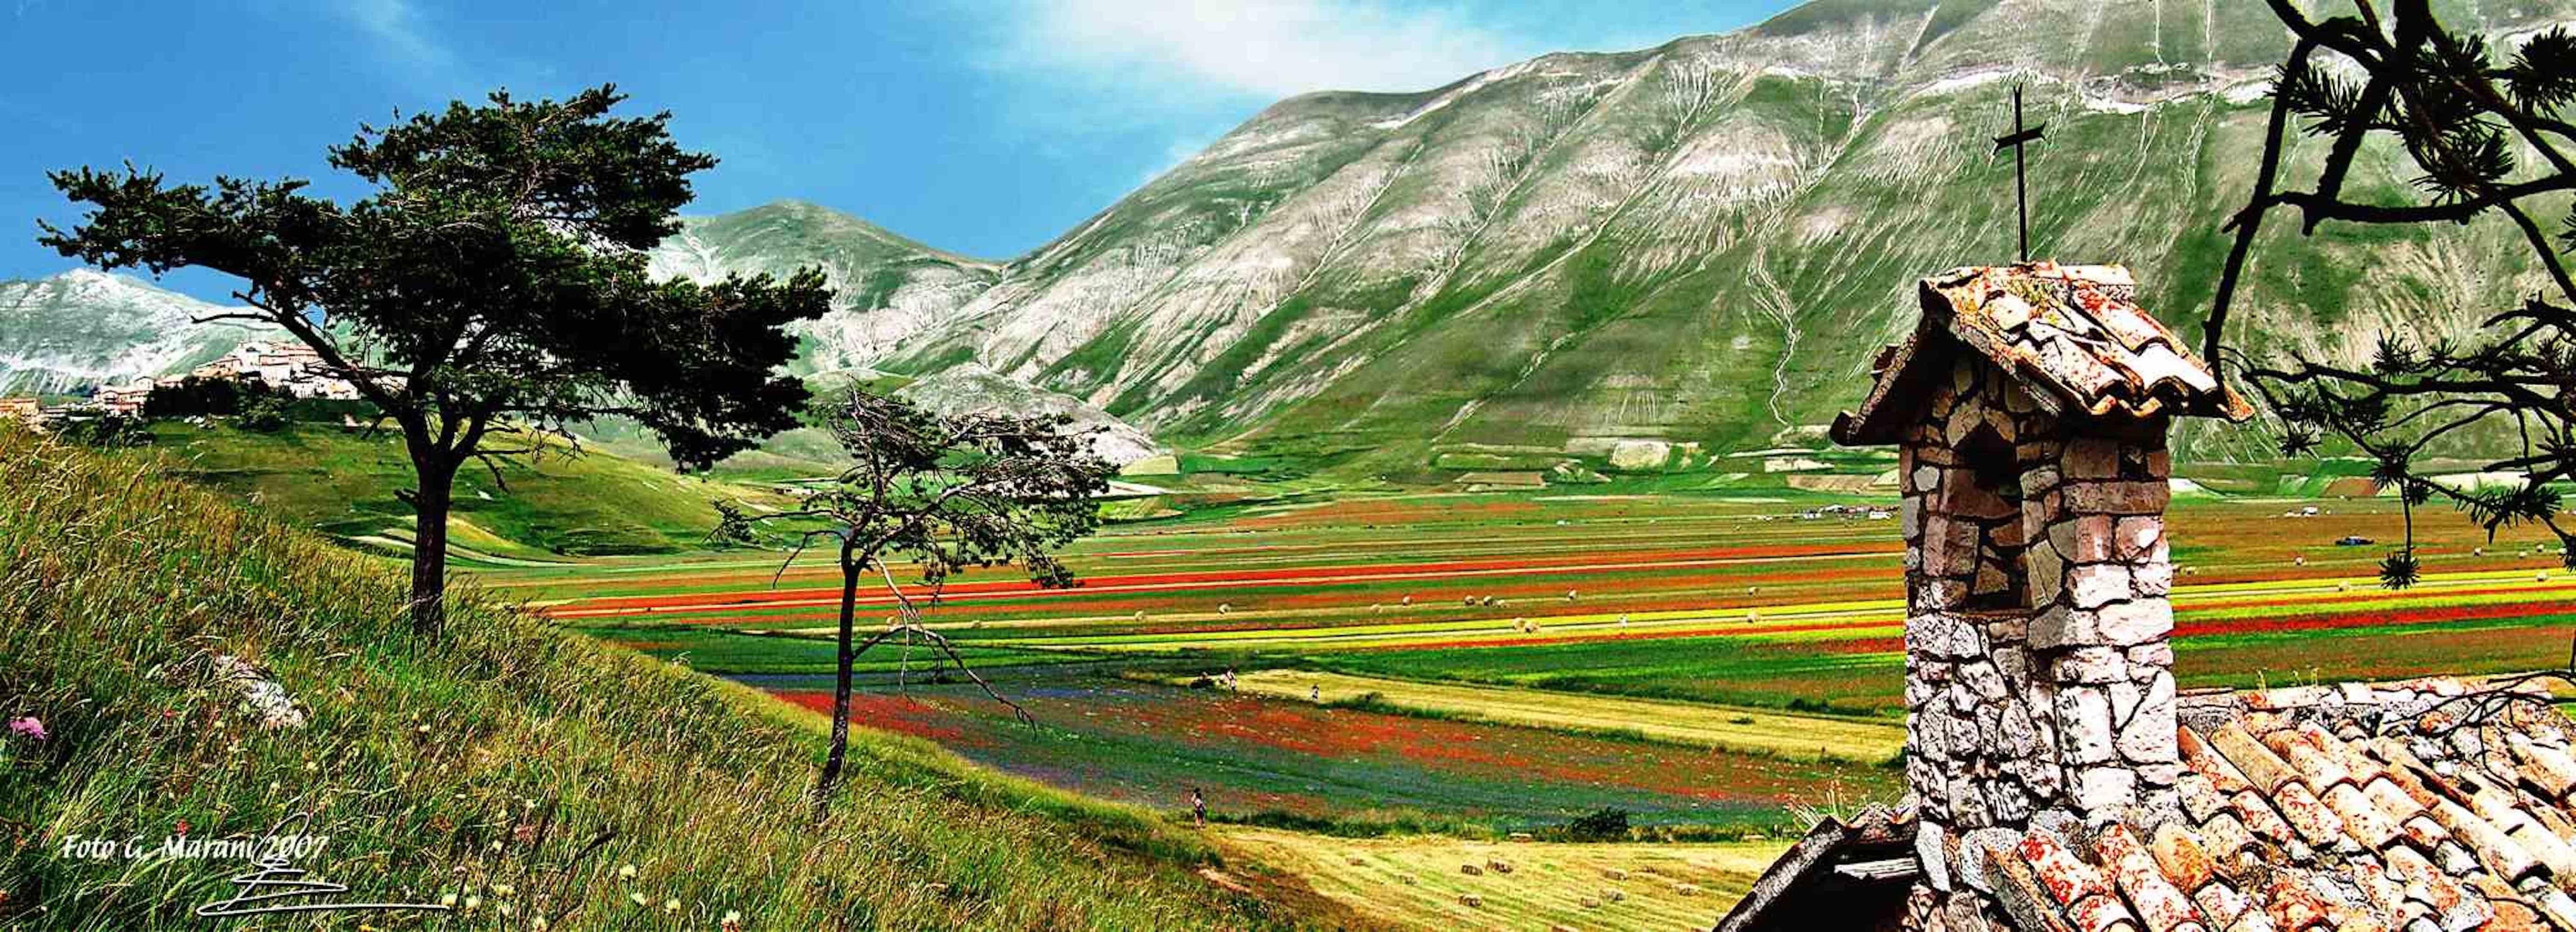 Der Rest des Regenbogens ist eines der besten Foto auf Leinwand von Giuseppe Marani im Jahr 2010 realisiert.

Der Künstler, der sich schon immer für Landschaften und Fotografie begeisterte, widmete sich dann der Landschaftsgestaltung. Er bewundert